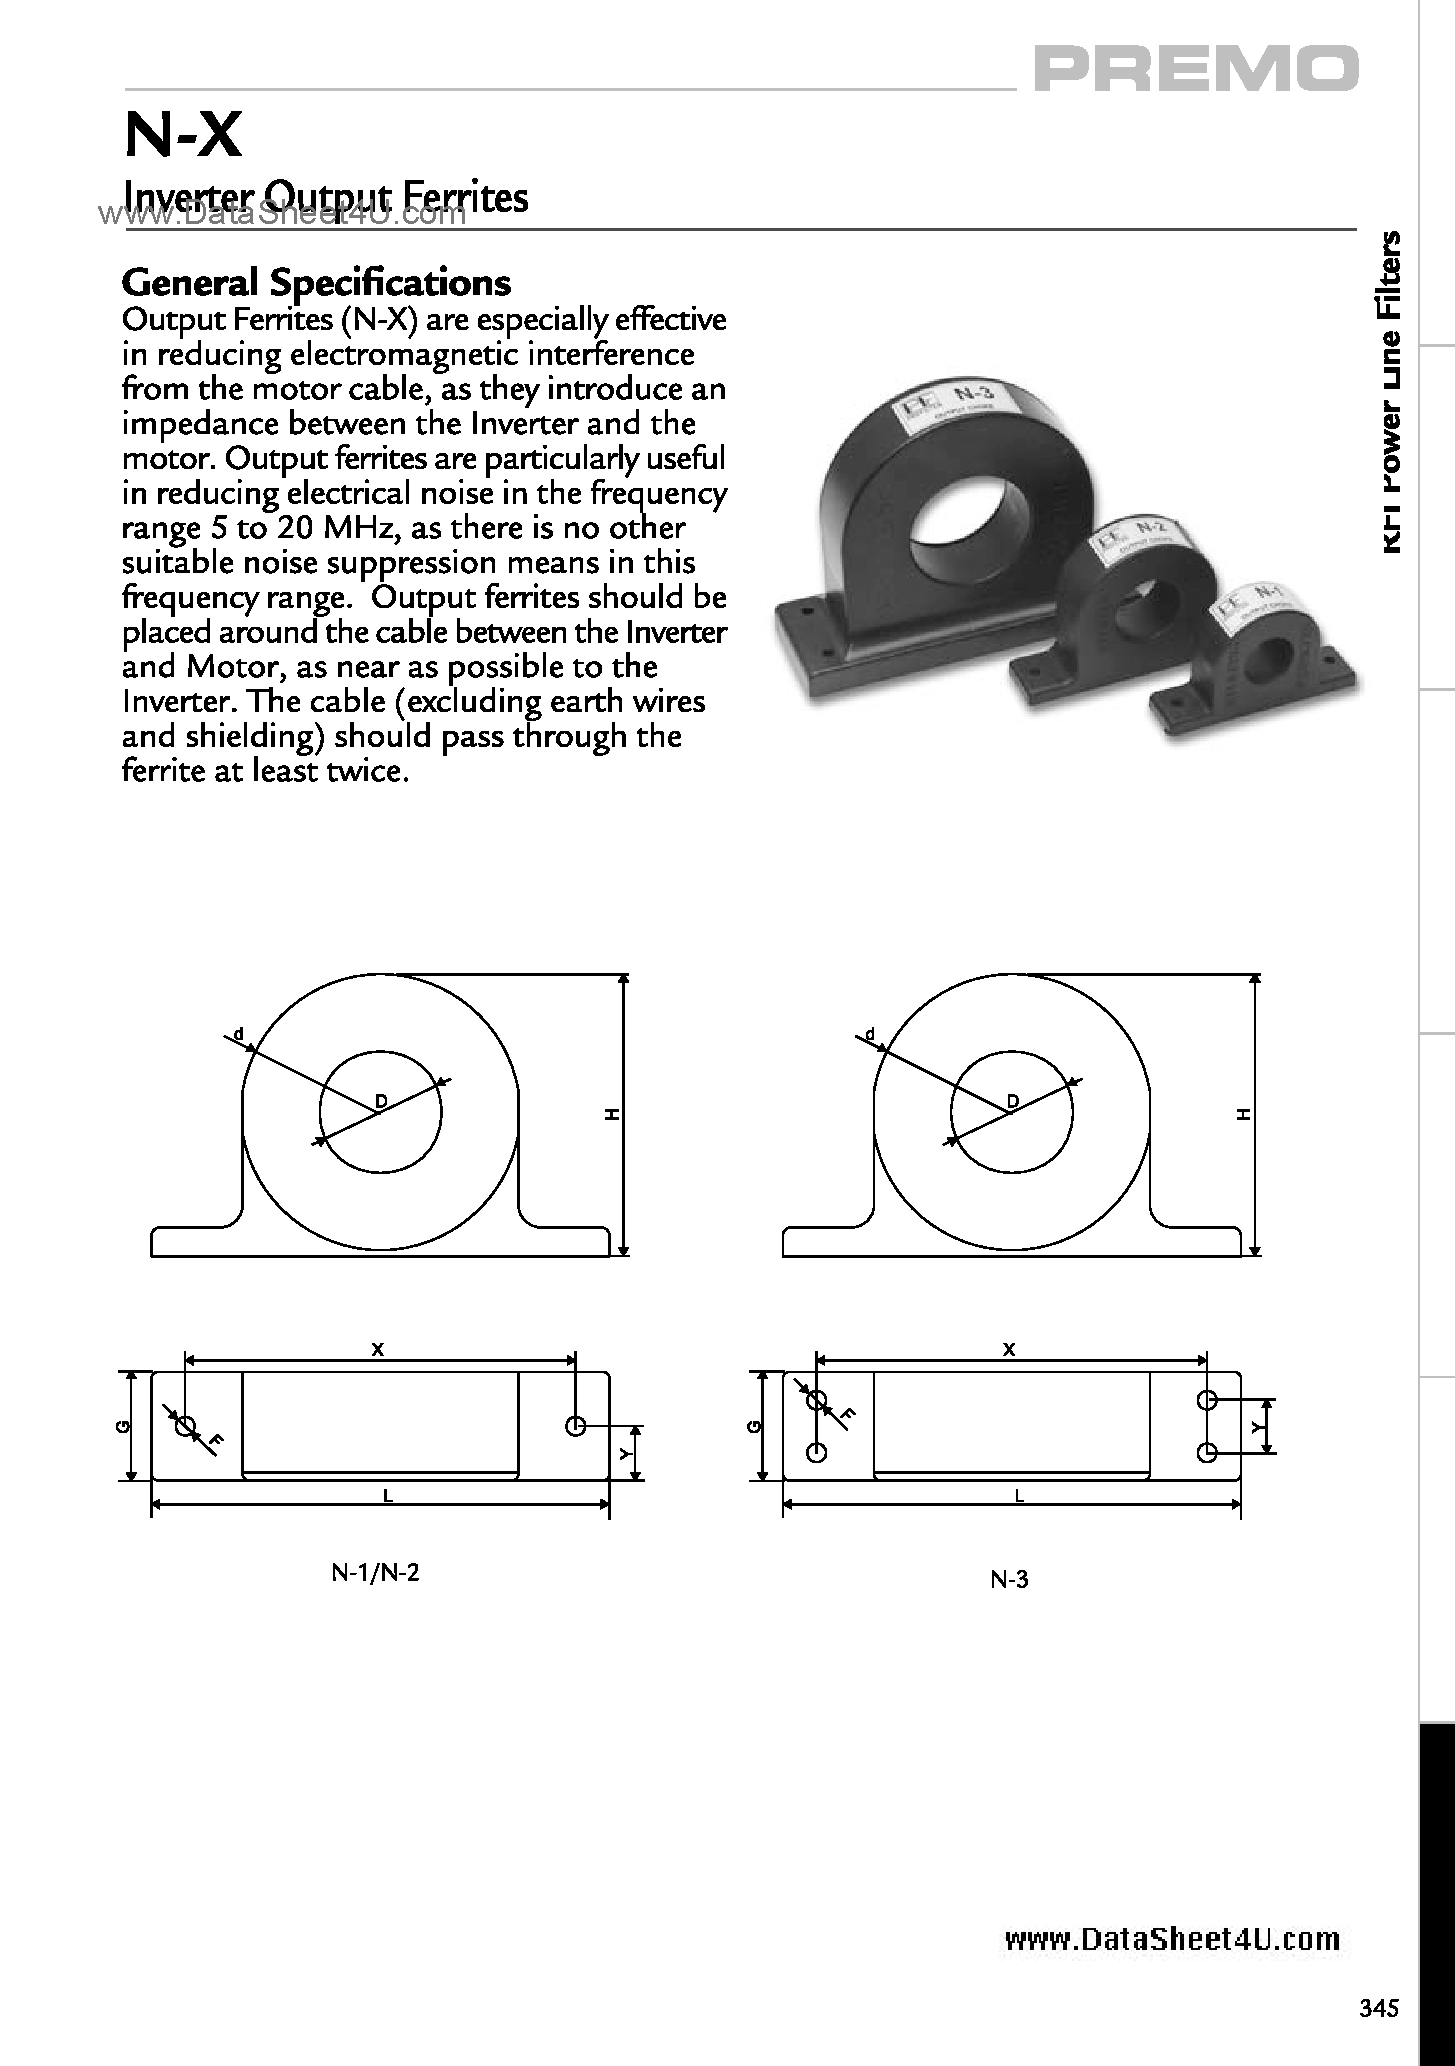 Даташит N-X-Output Ferrites - N-X Inverter страница 1